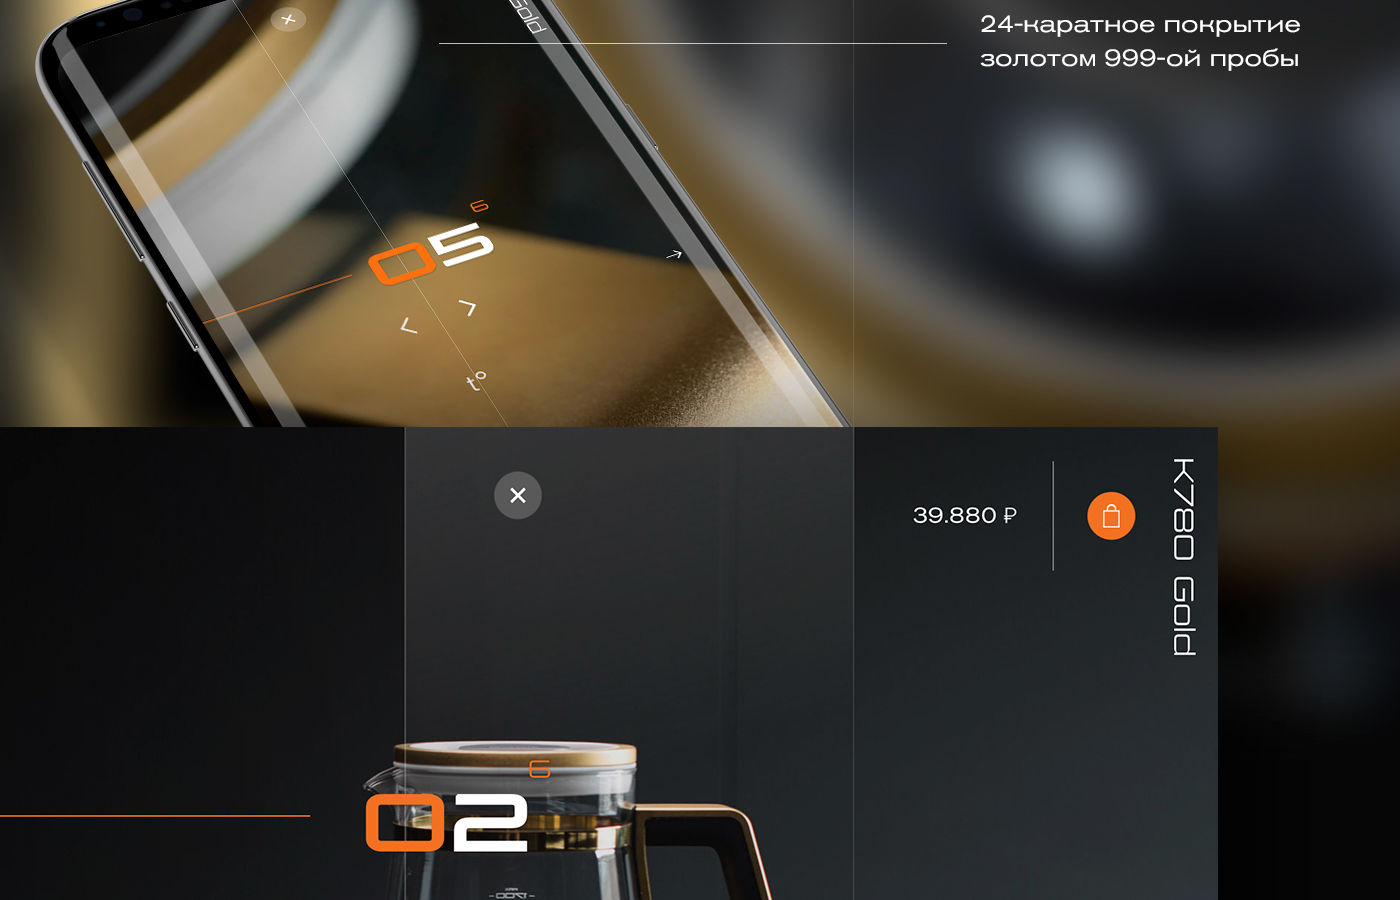 UI ux Creative Design BORK black dark gold premium Web Design  Responsive Design